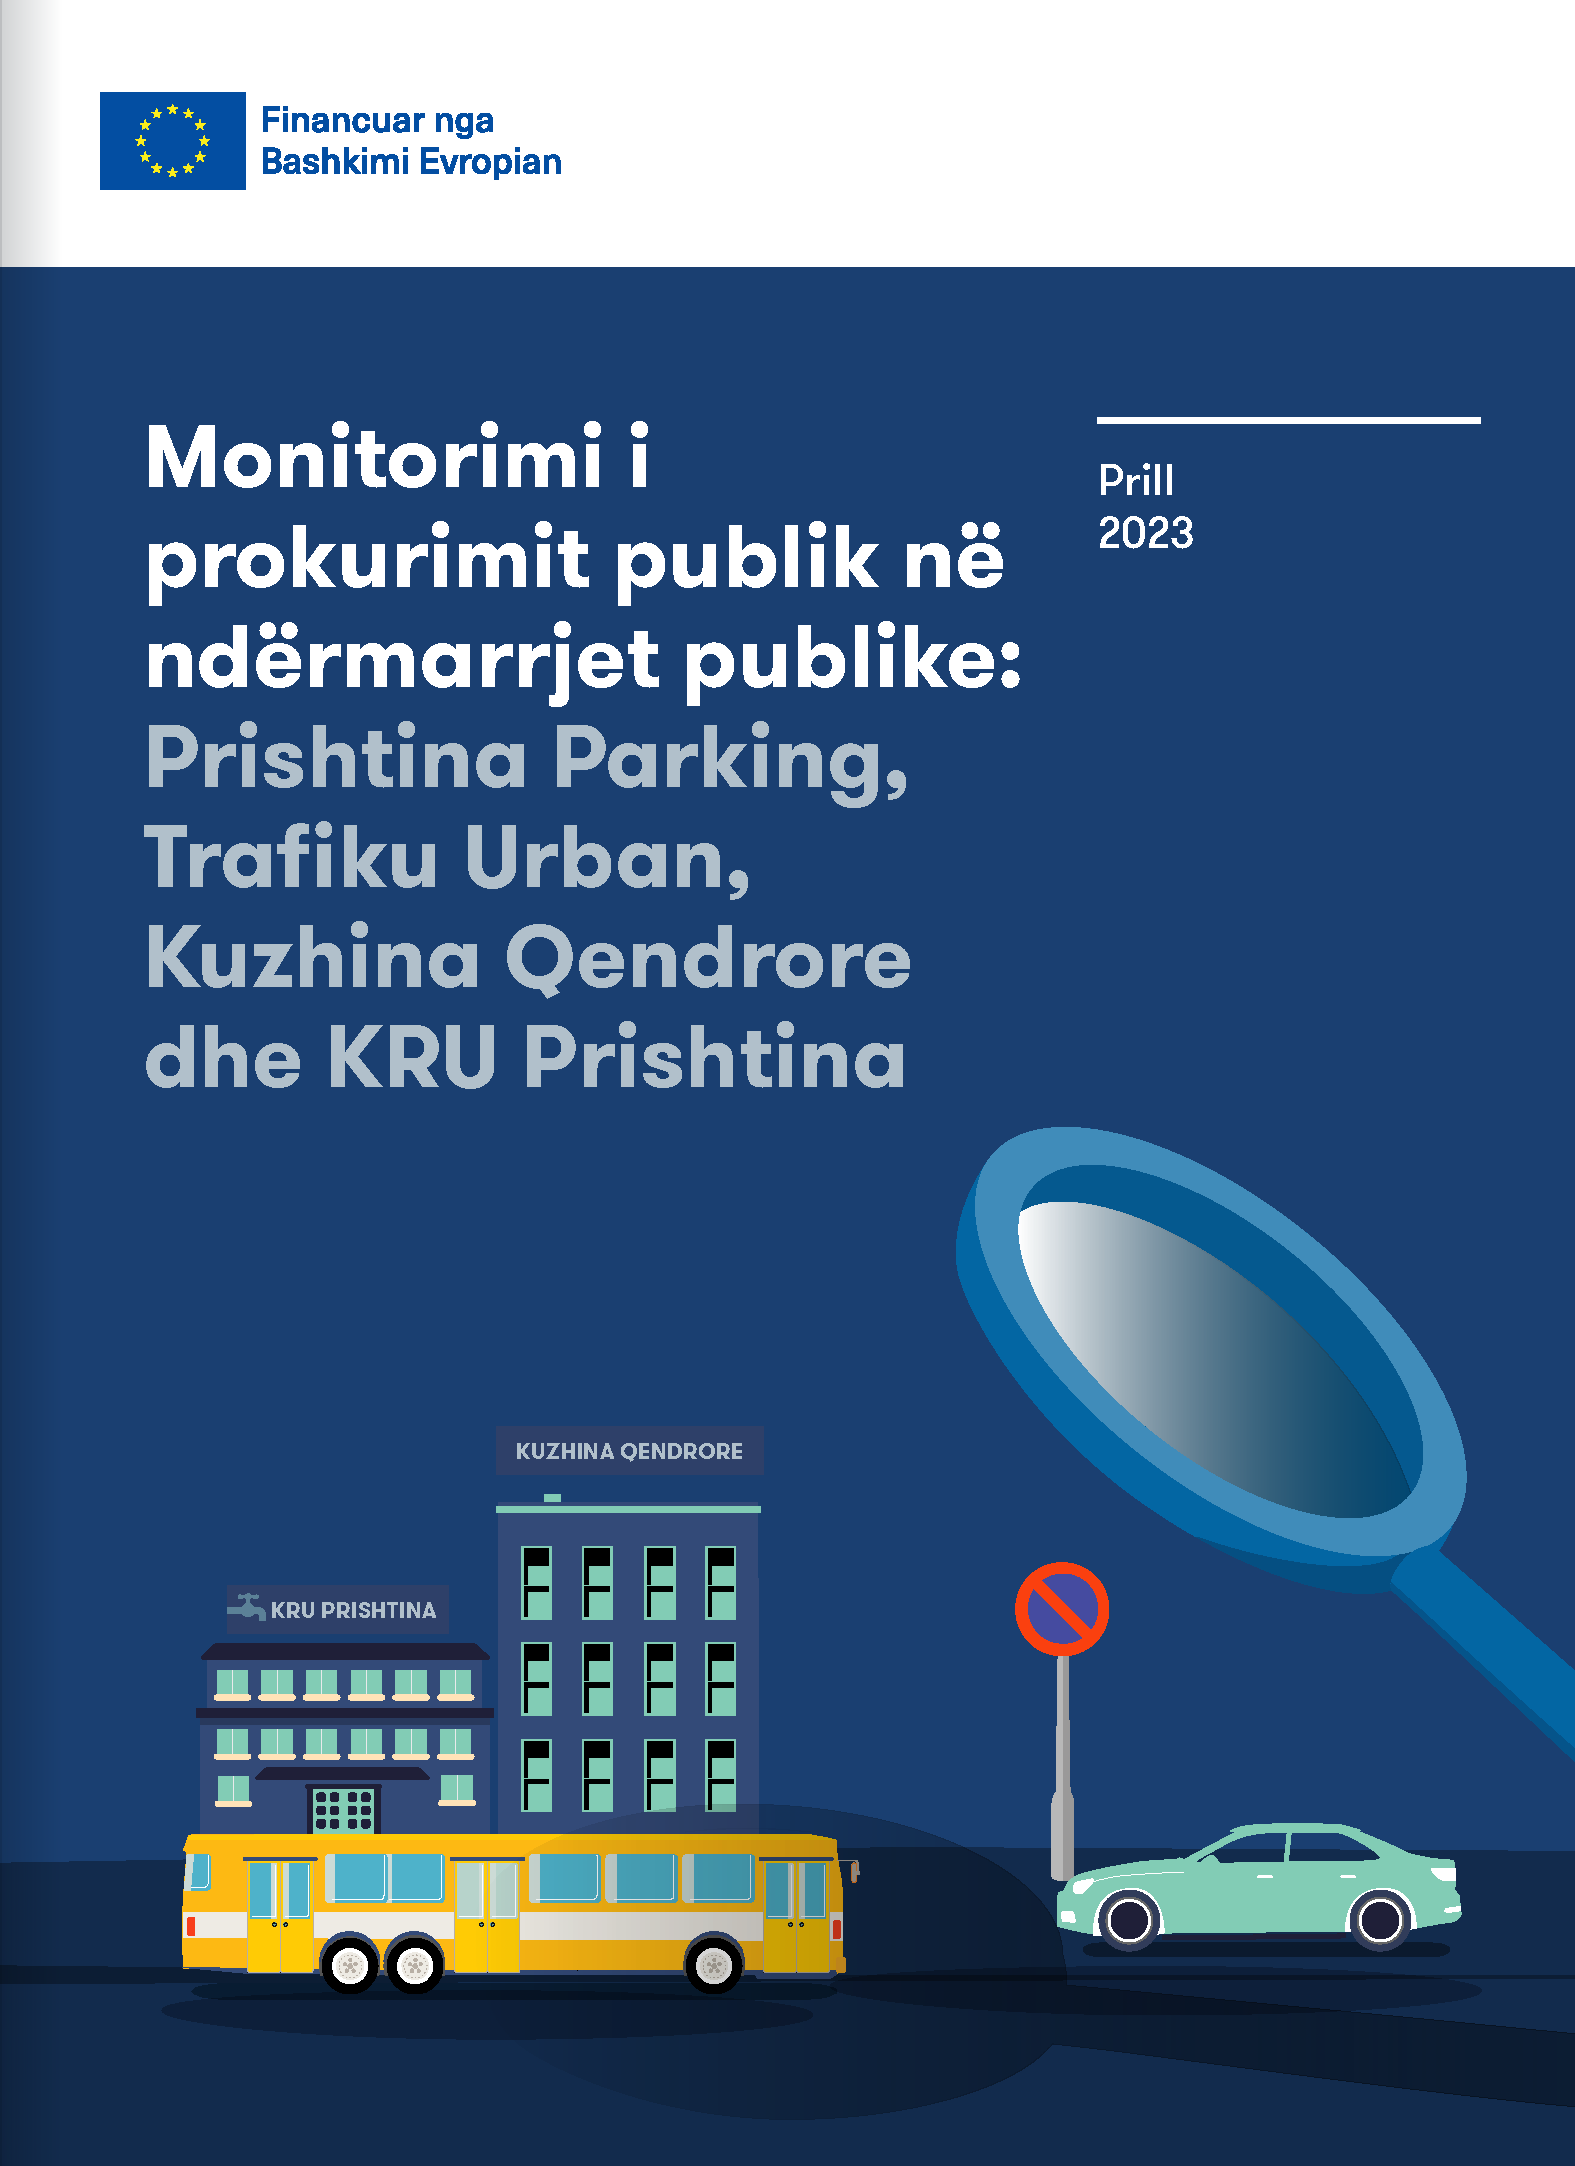 Monitorimi i prokurimit publik në ndërmarrjet publike: Prishtina Parking, Trafiku Urban, Kuzhina Qendrore dhe KRU Prishtina